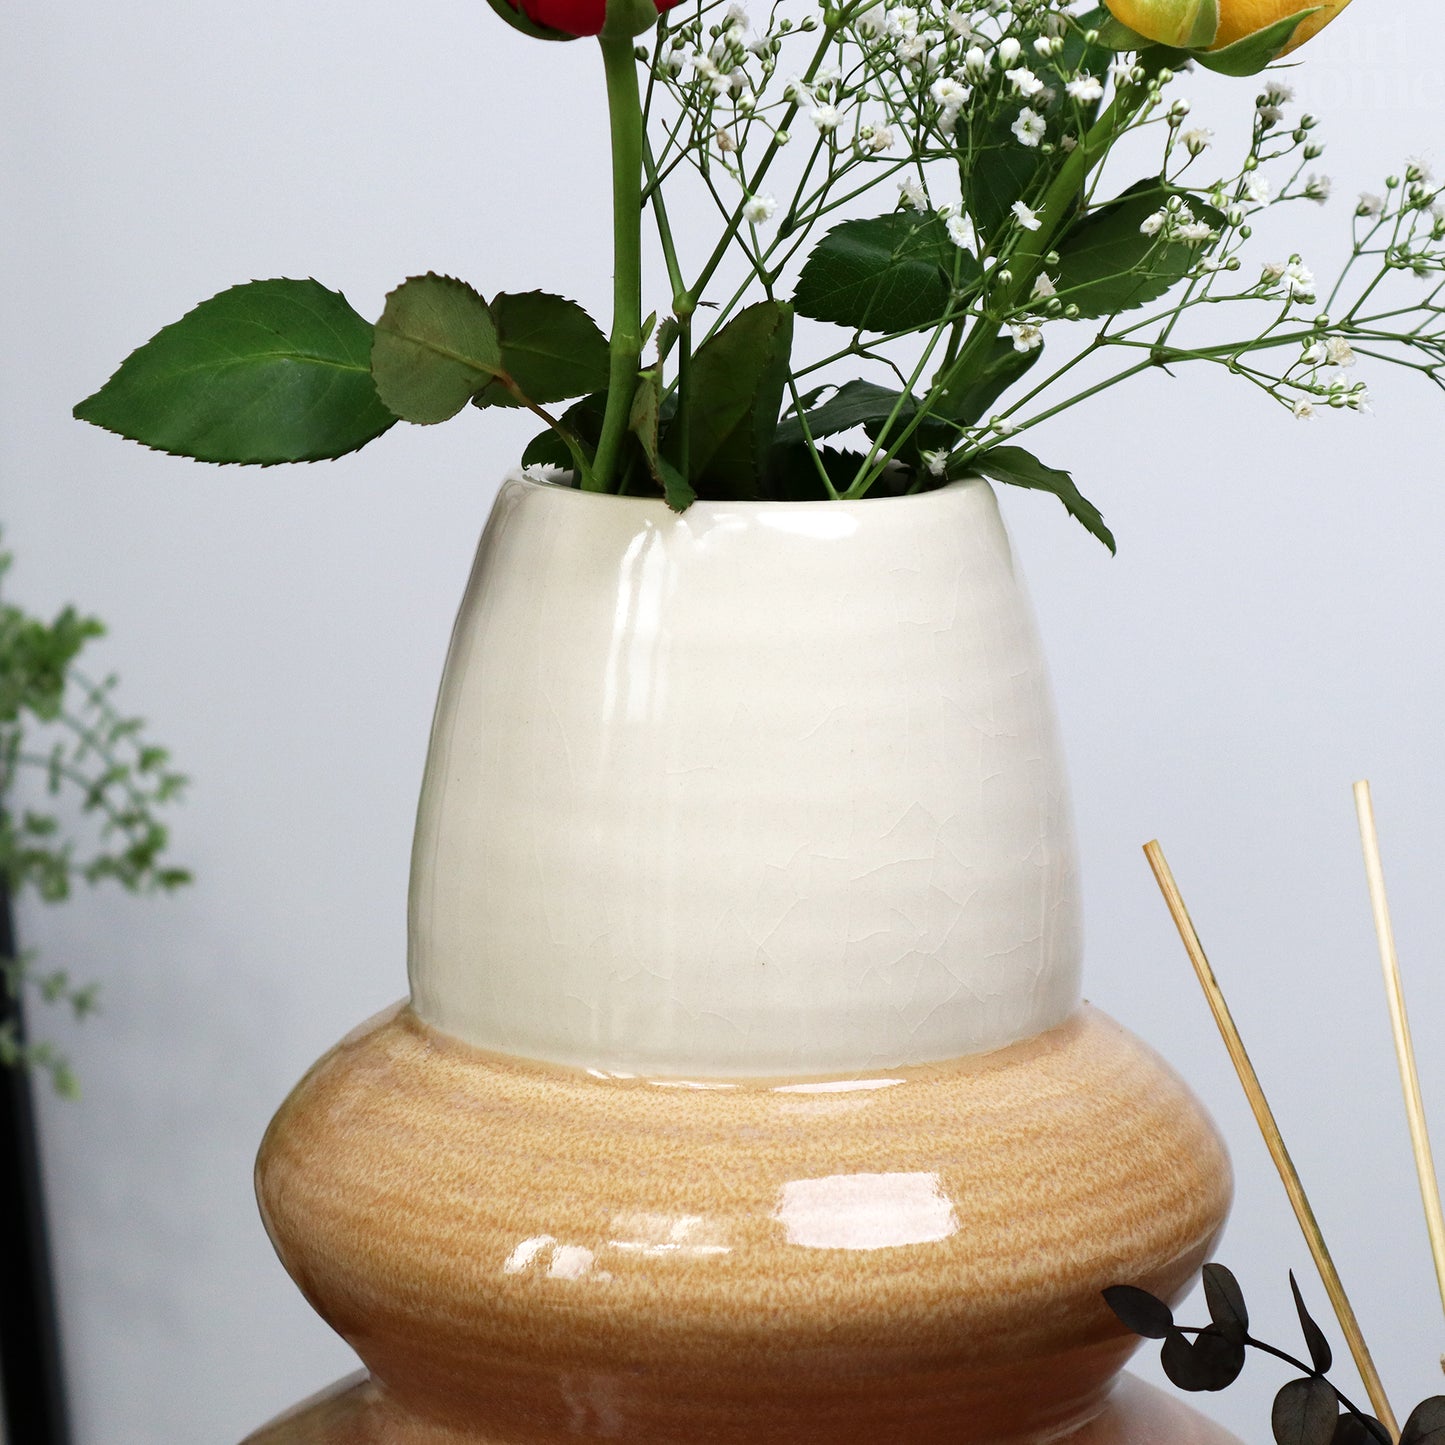 Reaktive Glasur-Vase aus Sandstein, groß